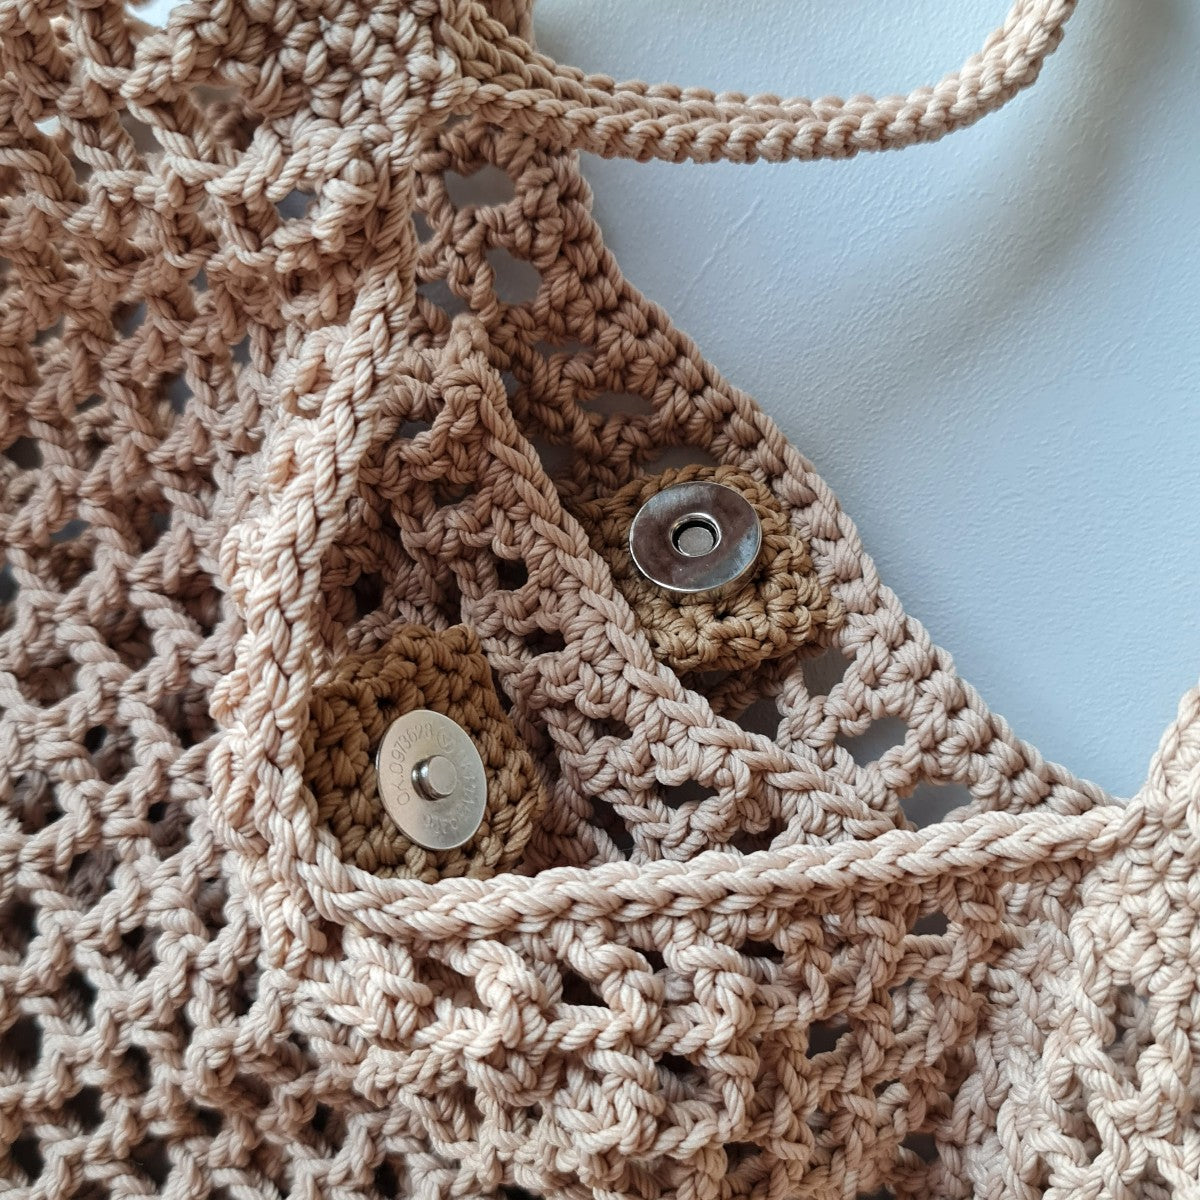 Halv Crochet Oat Bag